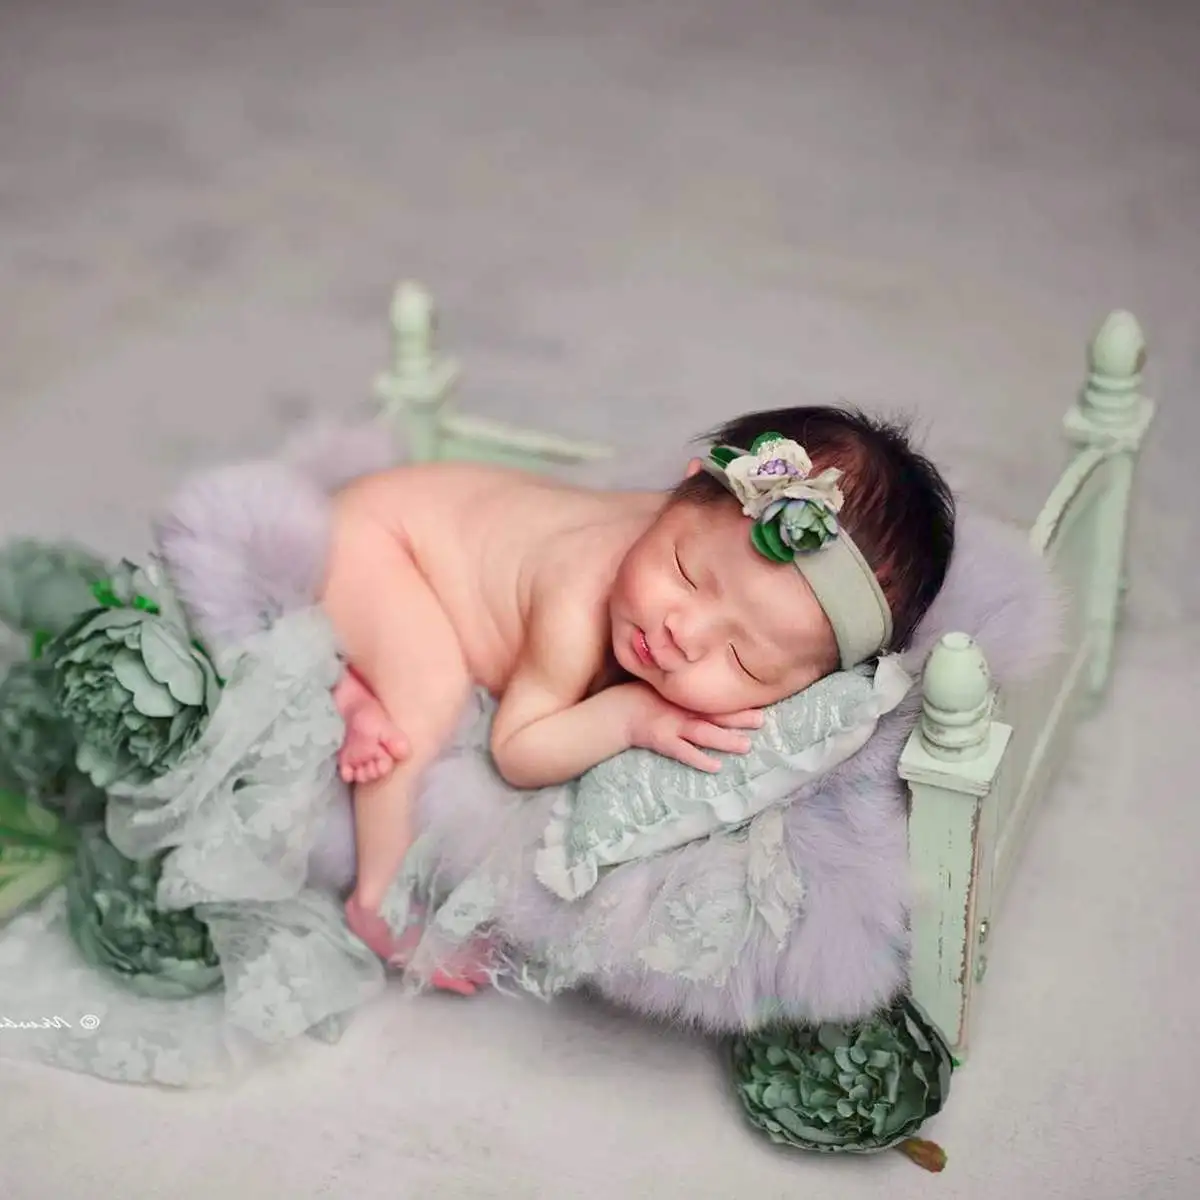 Bioby Ретро деревянная кровать новорожденный фотосессия реквизит детский студийный фон для фотосъемки шпаргалки розовый/фиолетовый/зеленый/небесно-голубой